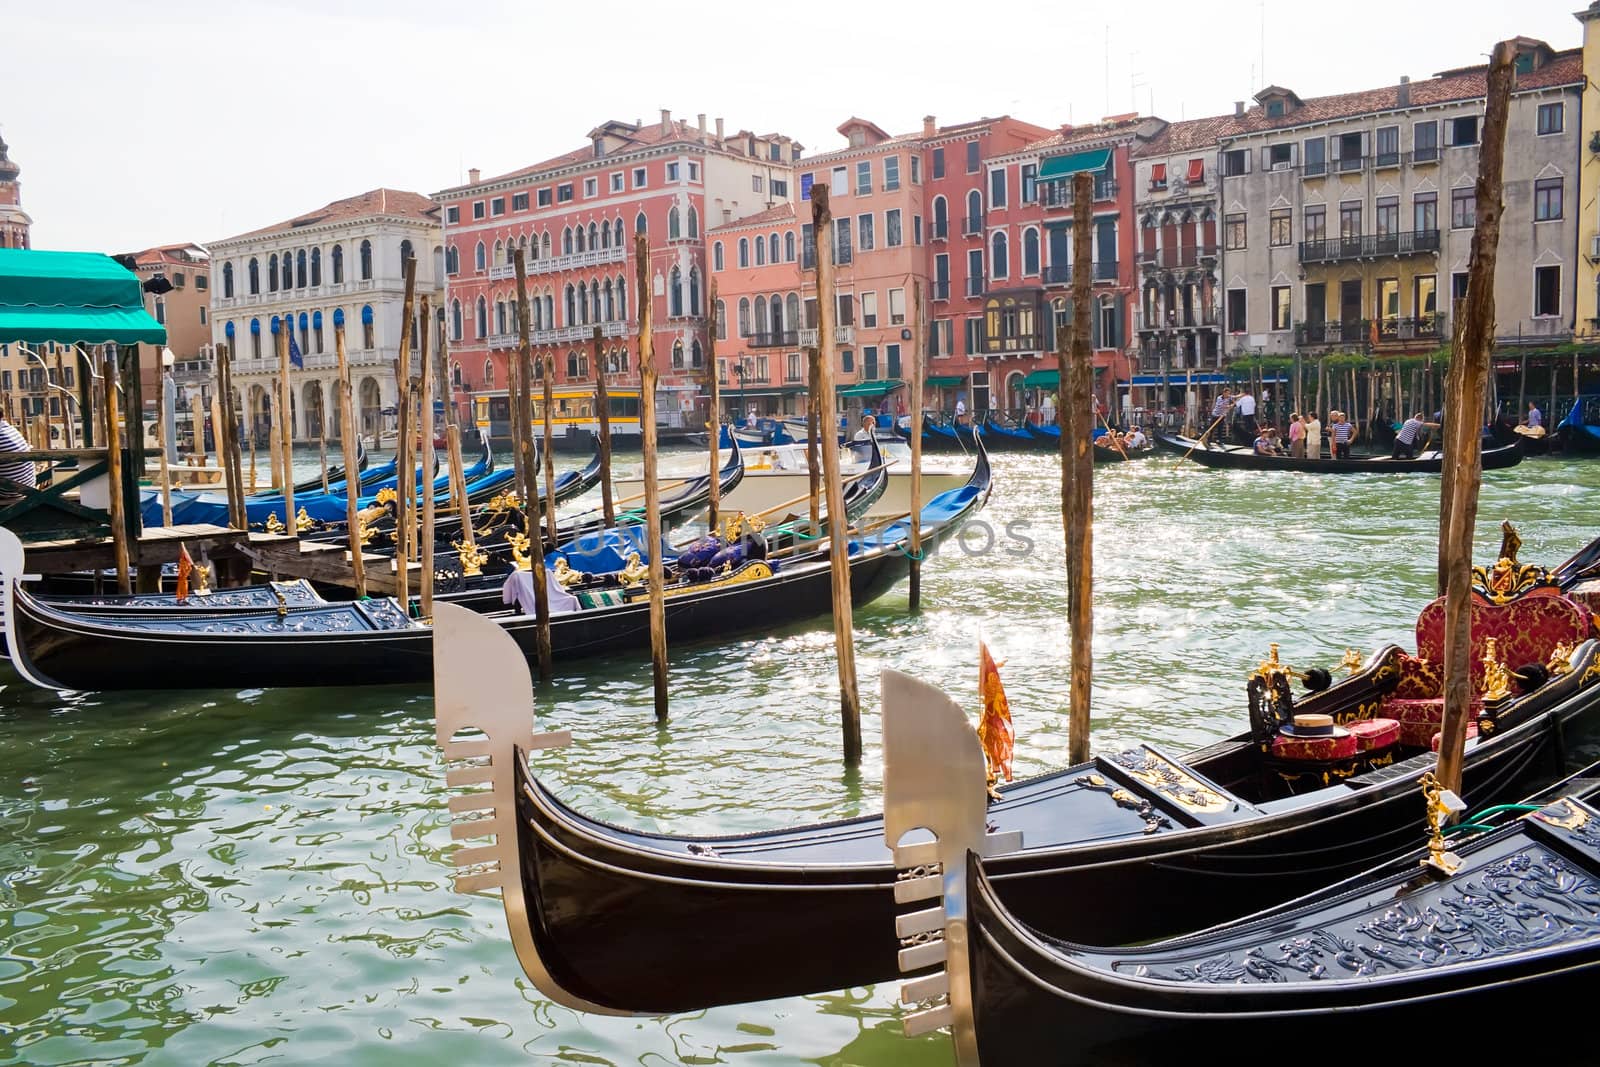 Nice venetian canal and gondolas, Venice, Italy